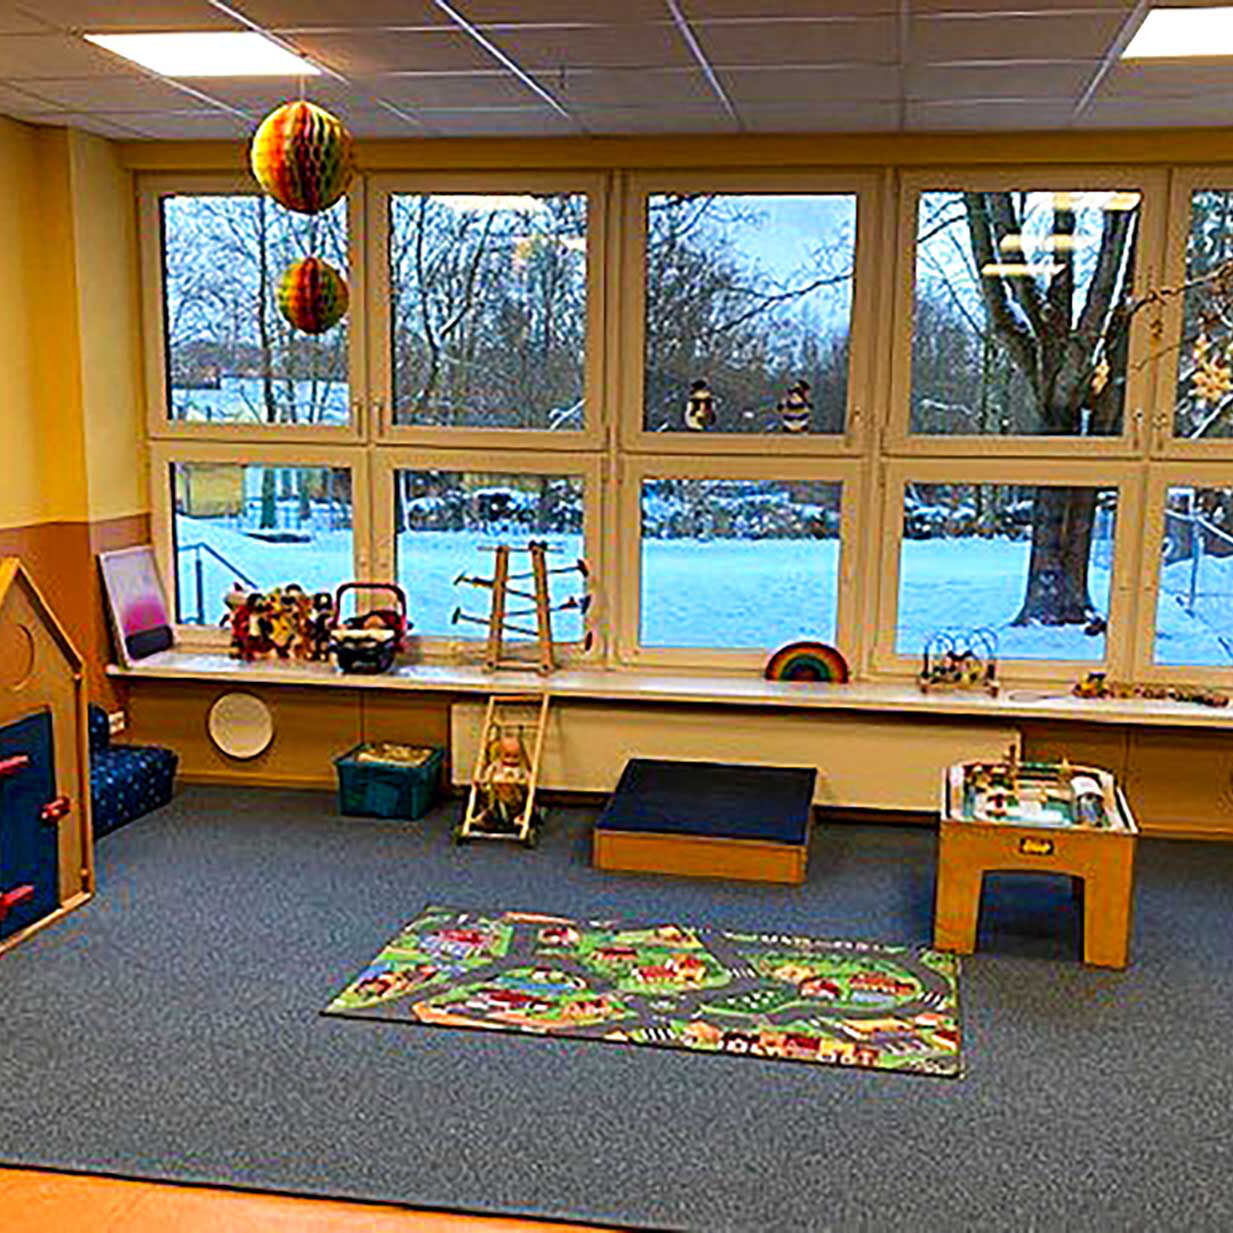 Das Gruppenzimmer im Kleinkindbereich mit einem Spielteppich, Kinderspielküche, Puppenhaus und vielen Kleinkindspielzeug.